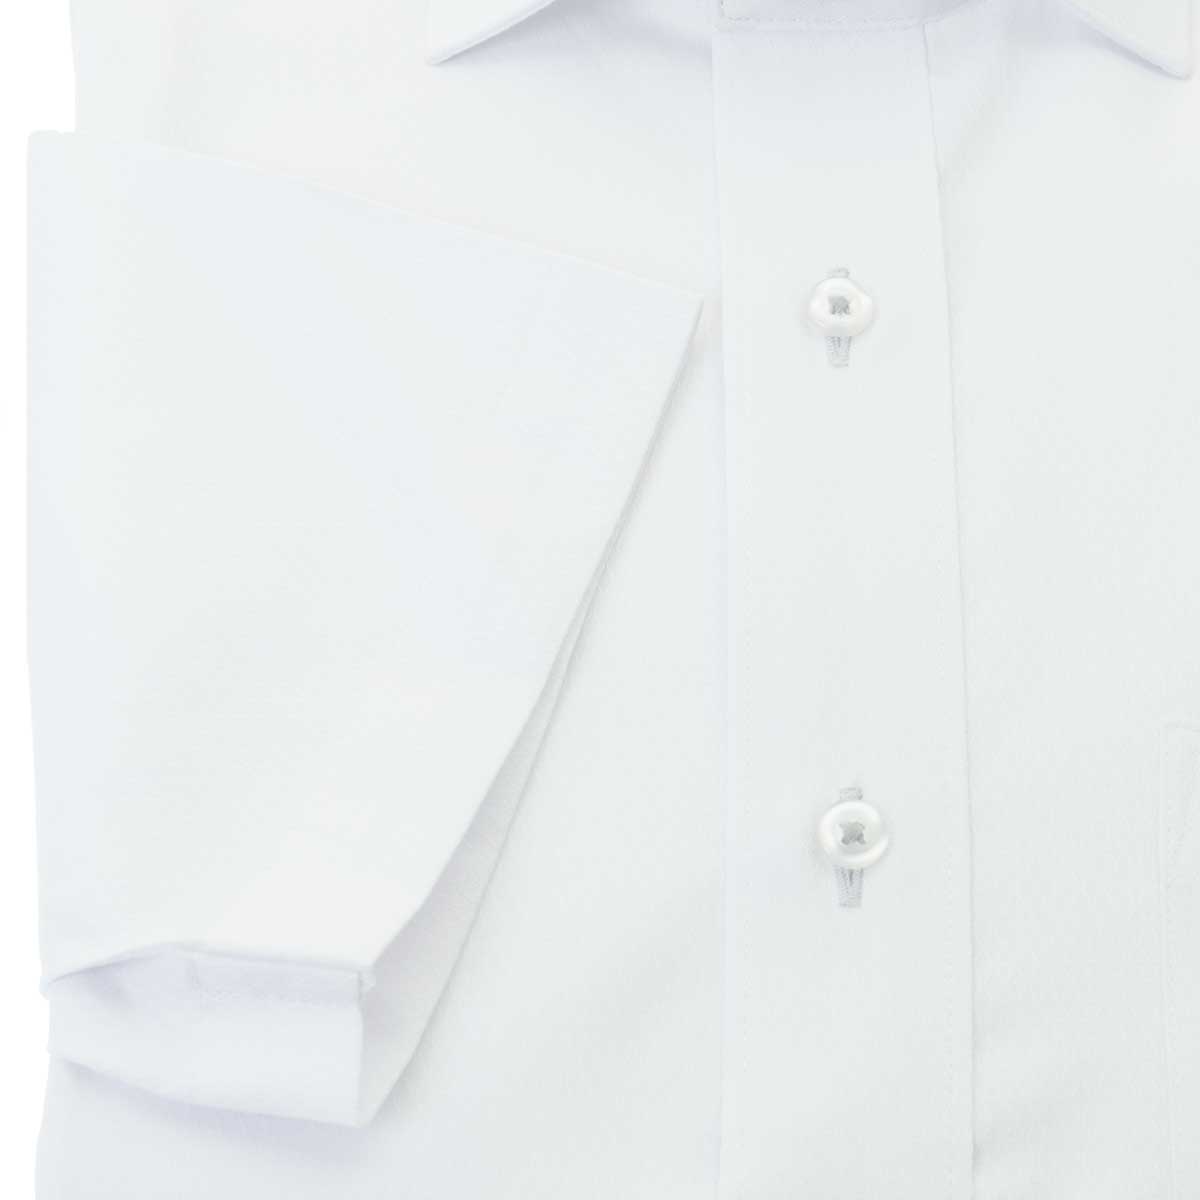 SHIRT HOUSE・ブルーレーベル 半袖スリムフィット ワイドカラー ホワイト ワイシャツ